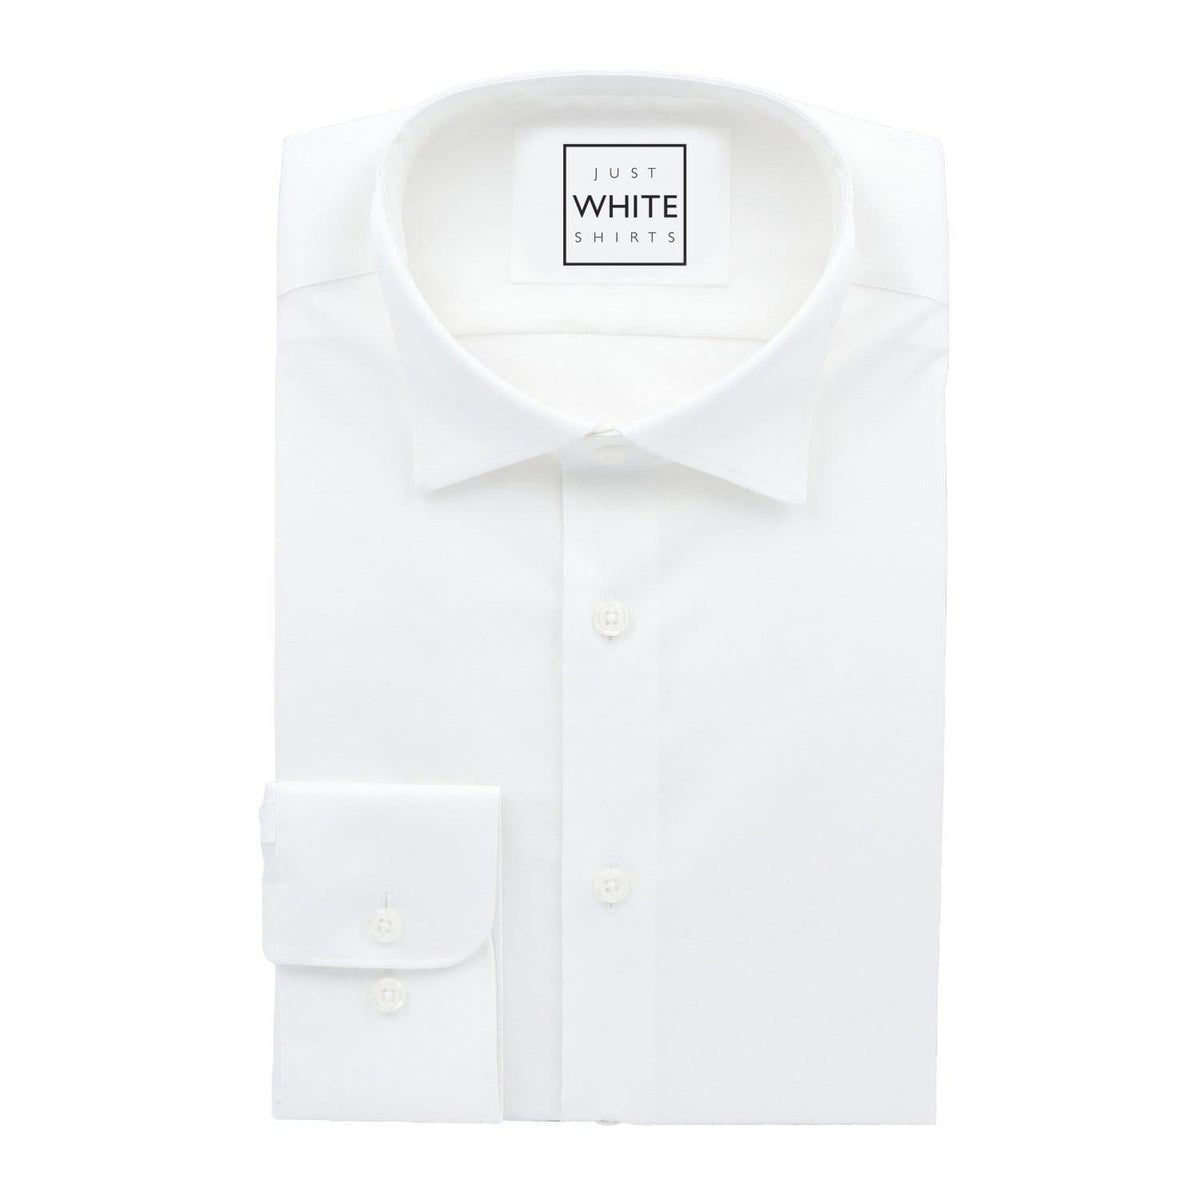 Men's White Dress Shirts